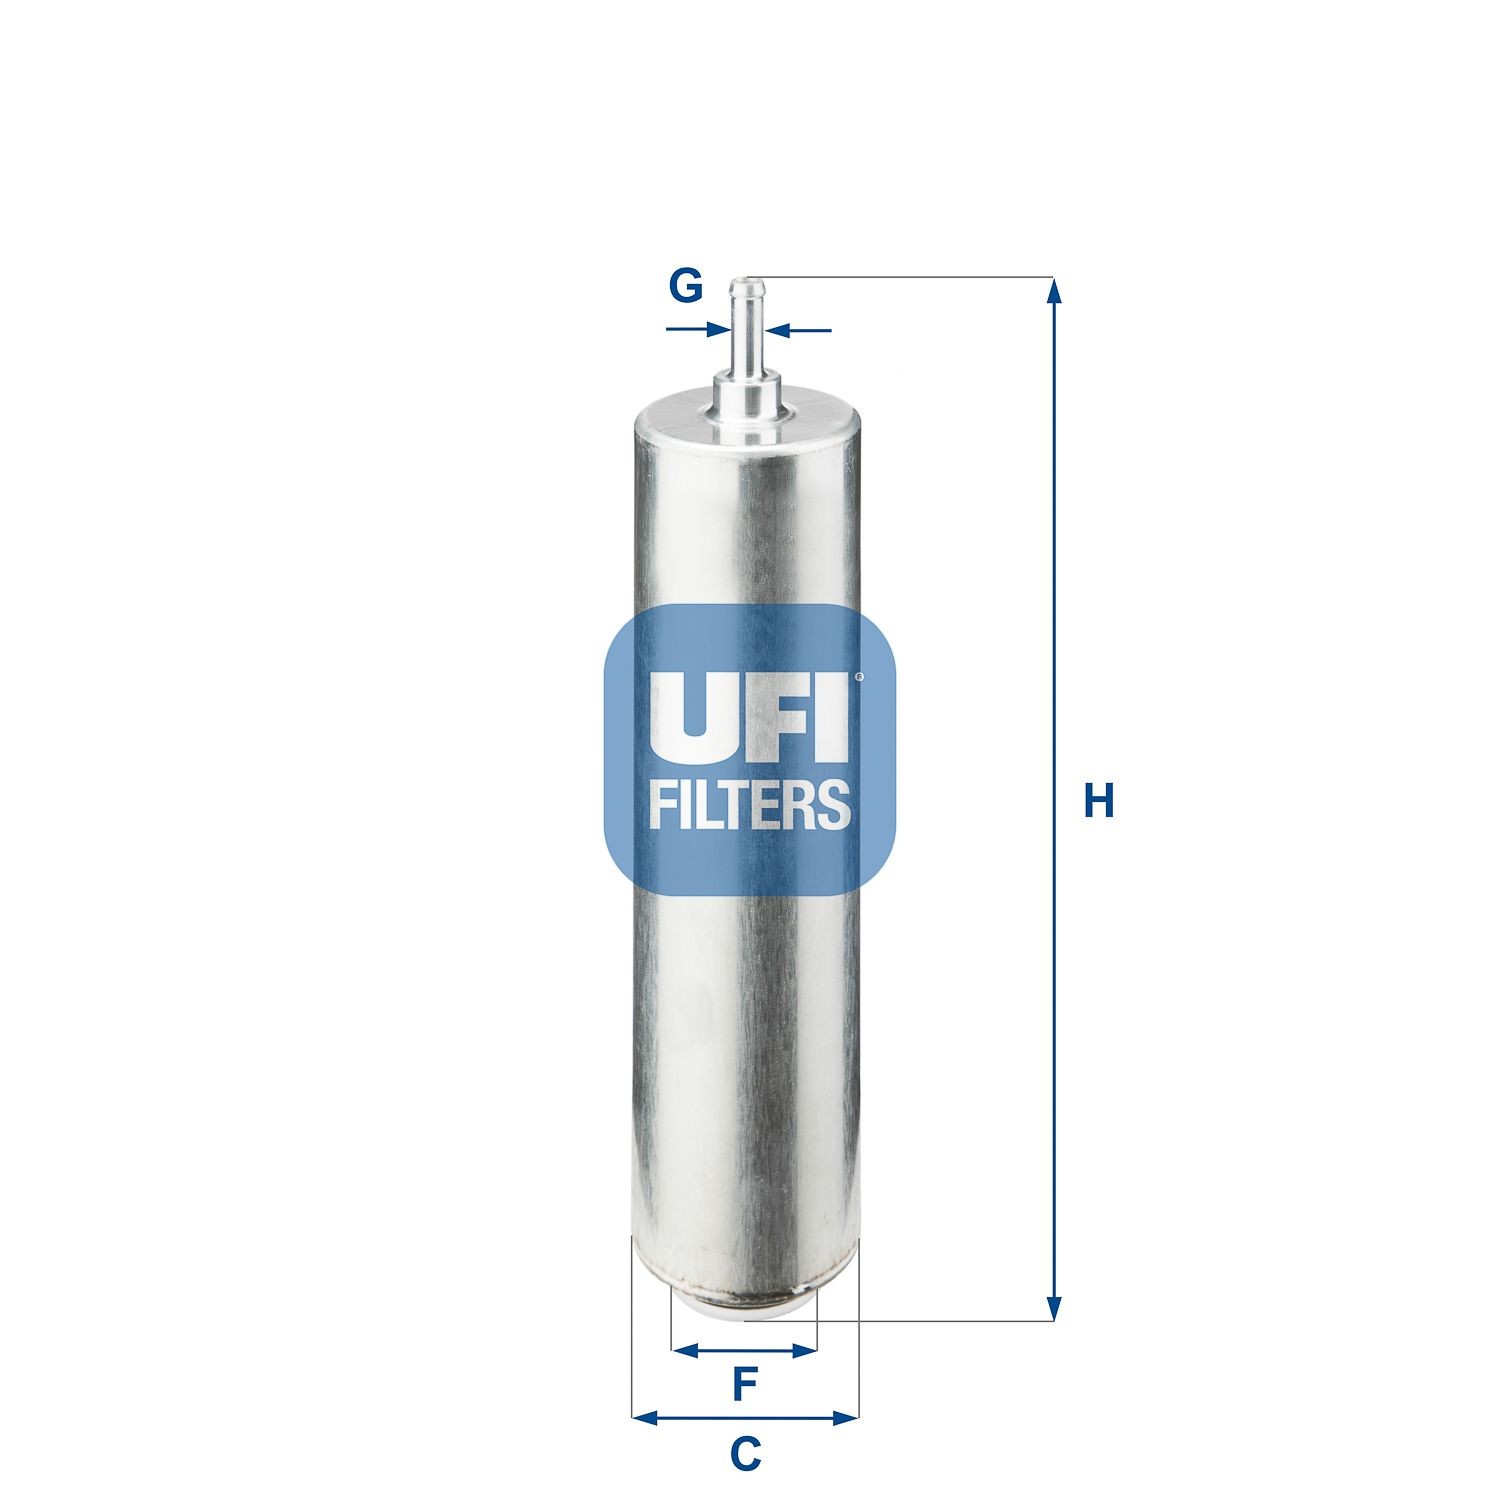 UFI 31.852.00 Fuel filters Filter Insert, 36mm, 8mm